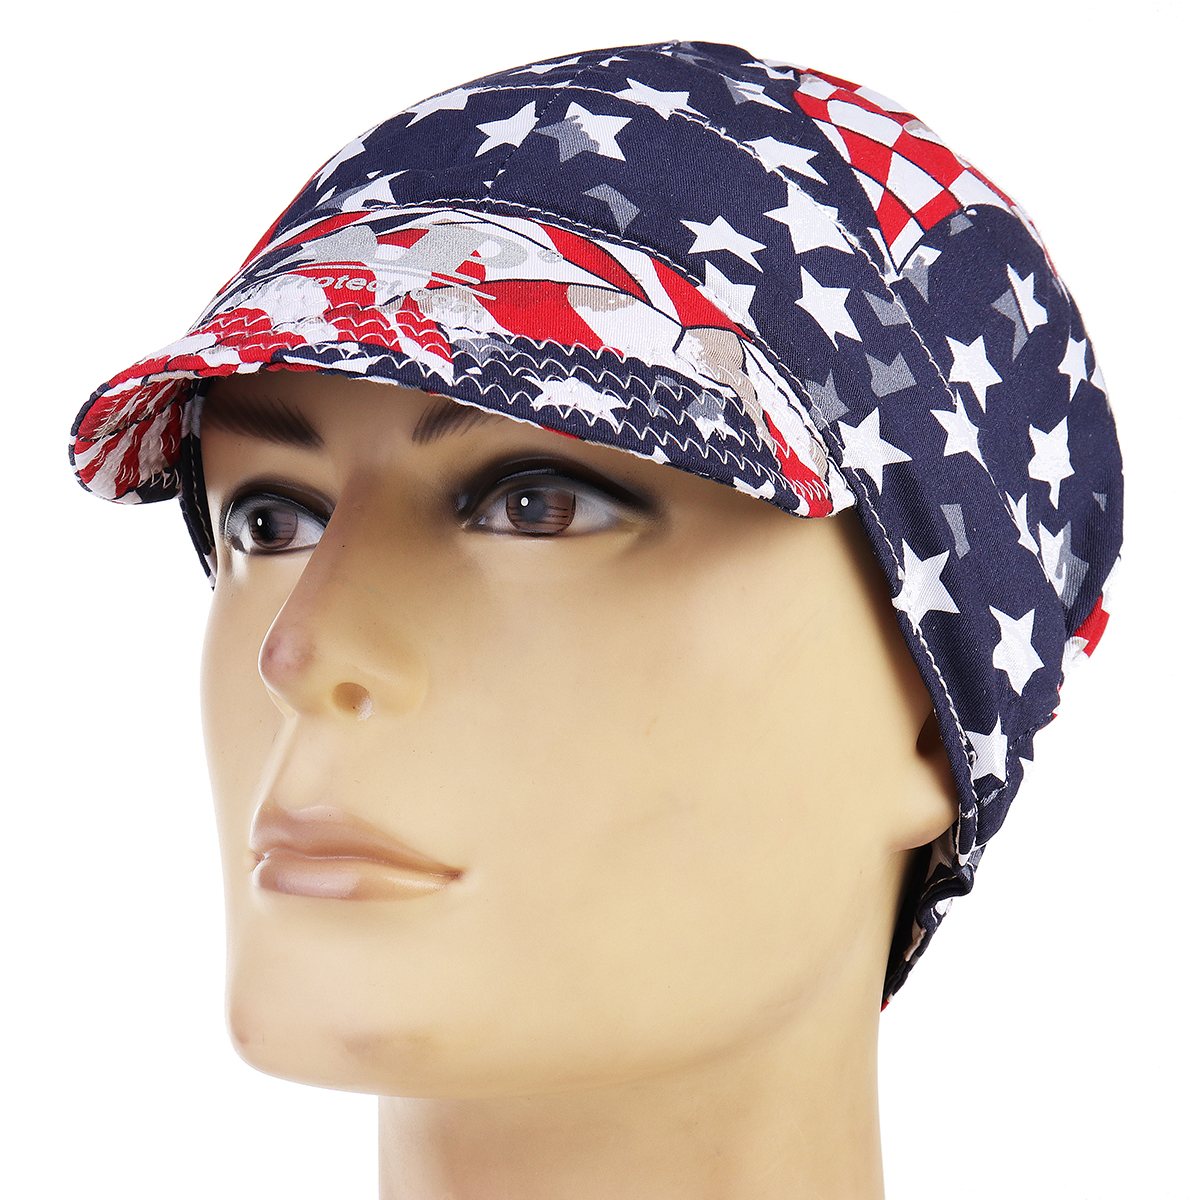 Welding-Cap-Protective-Cotton-Hat-Cap-Welding-Helmet-Hood-Tool-Sweat-Absorption-1321885-2